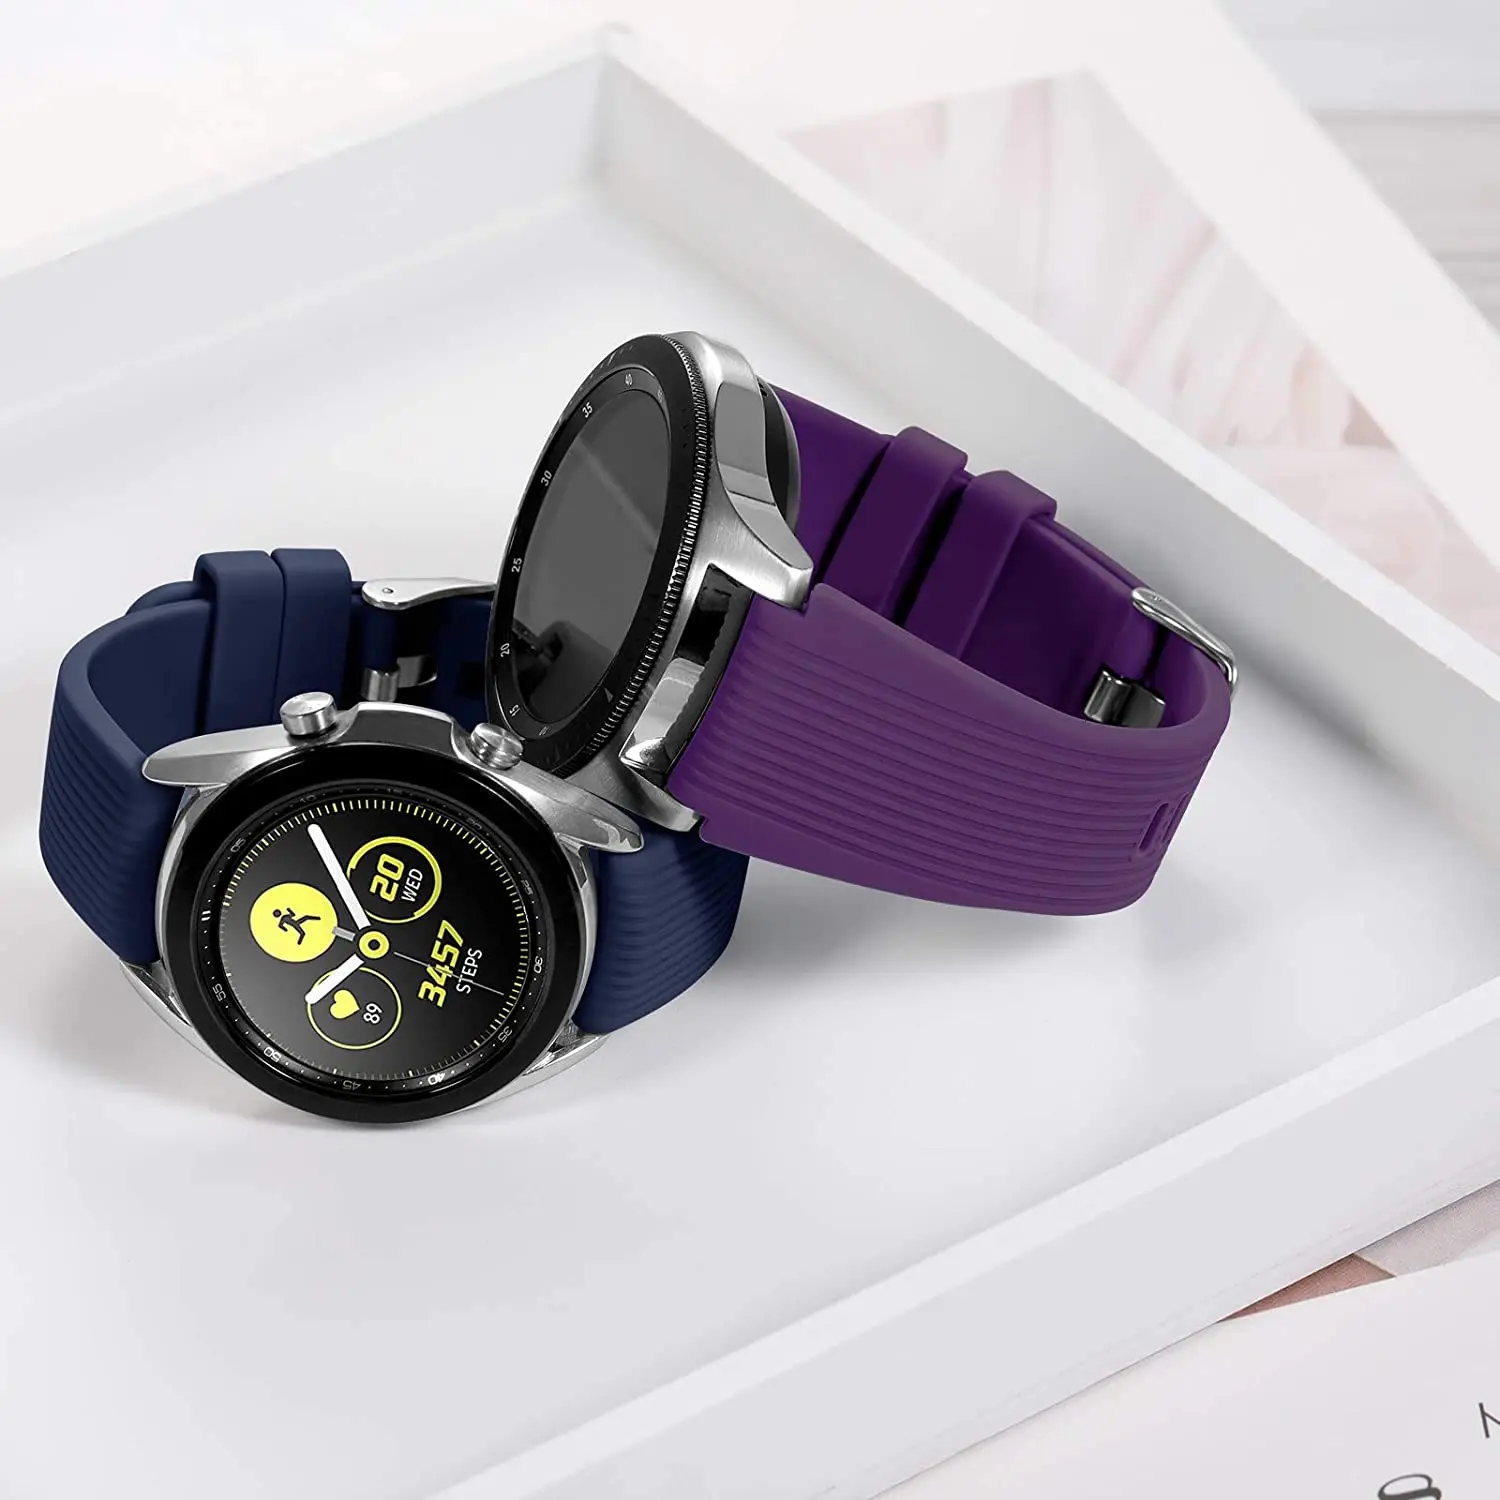 Pulseira de relógio de silicone para Samsung Galaxy, pulseira esportiva, pulseira, Amazfit GTR, GTS, Huawei, GT3, GT3-2 Pro, 46mm, 22mm, 20mm